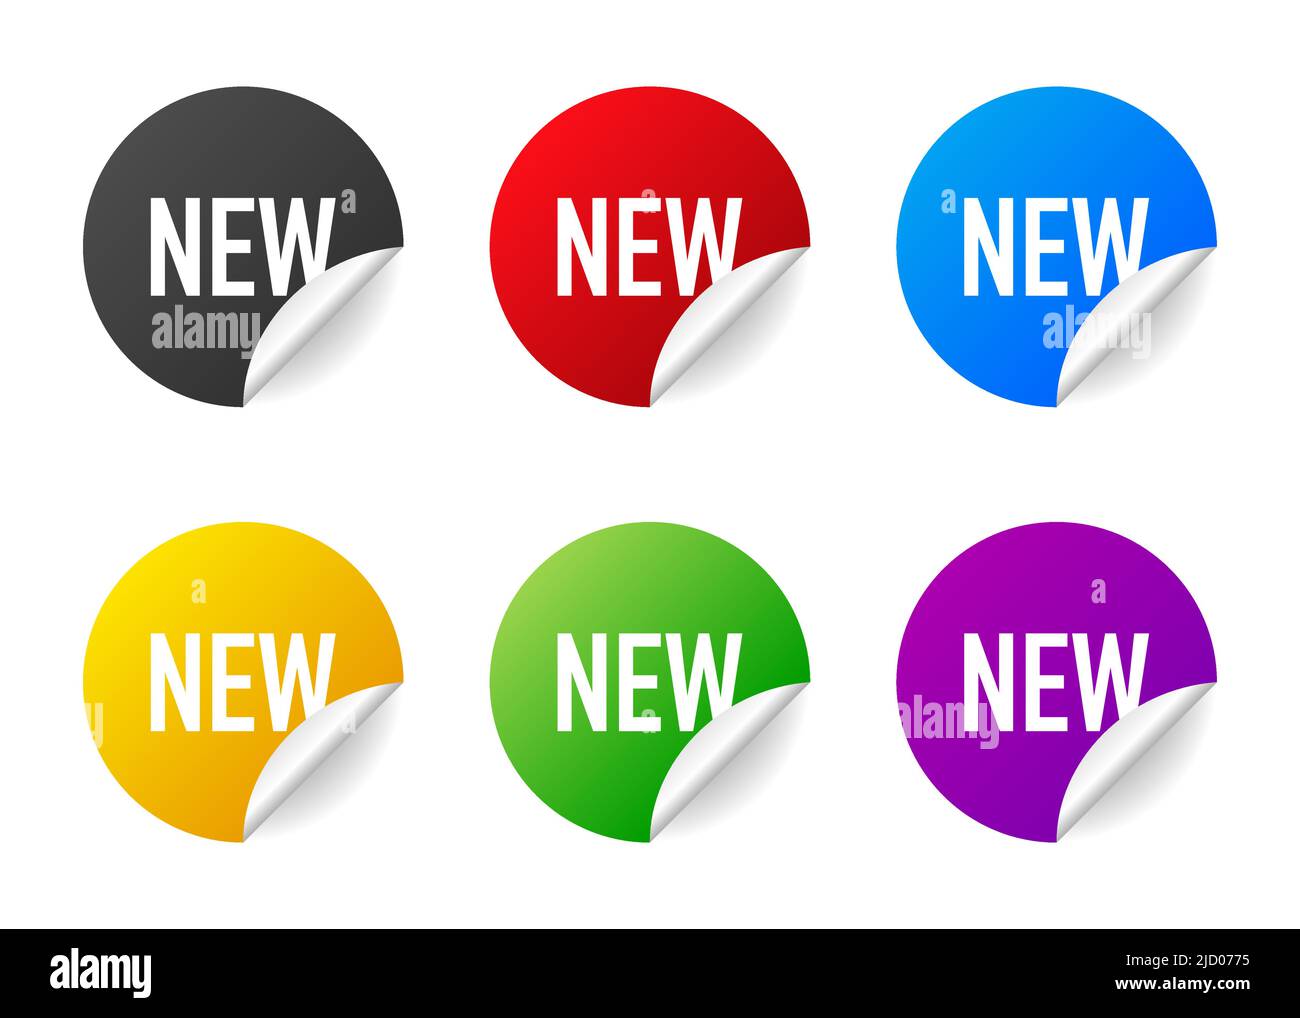 Nuovo. Badge realistico di diversi colori. Pubblicità dei prodotti. Web design. Illustrazione vettoriale. Illustrazione Vettoriale